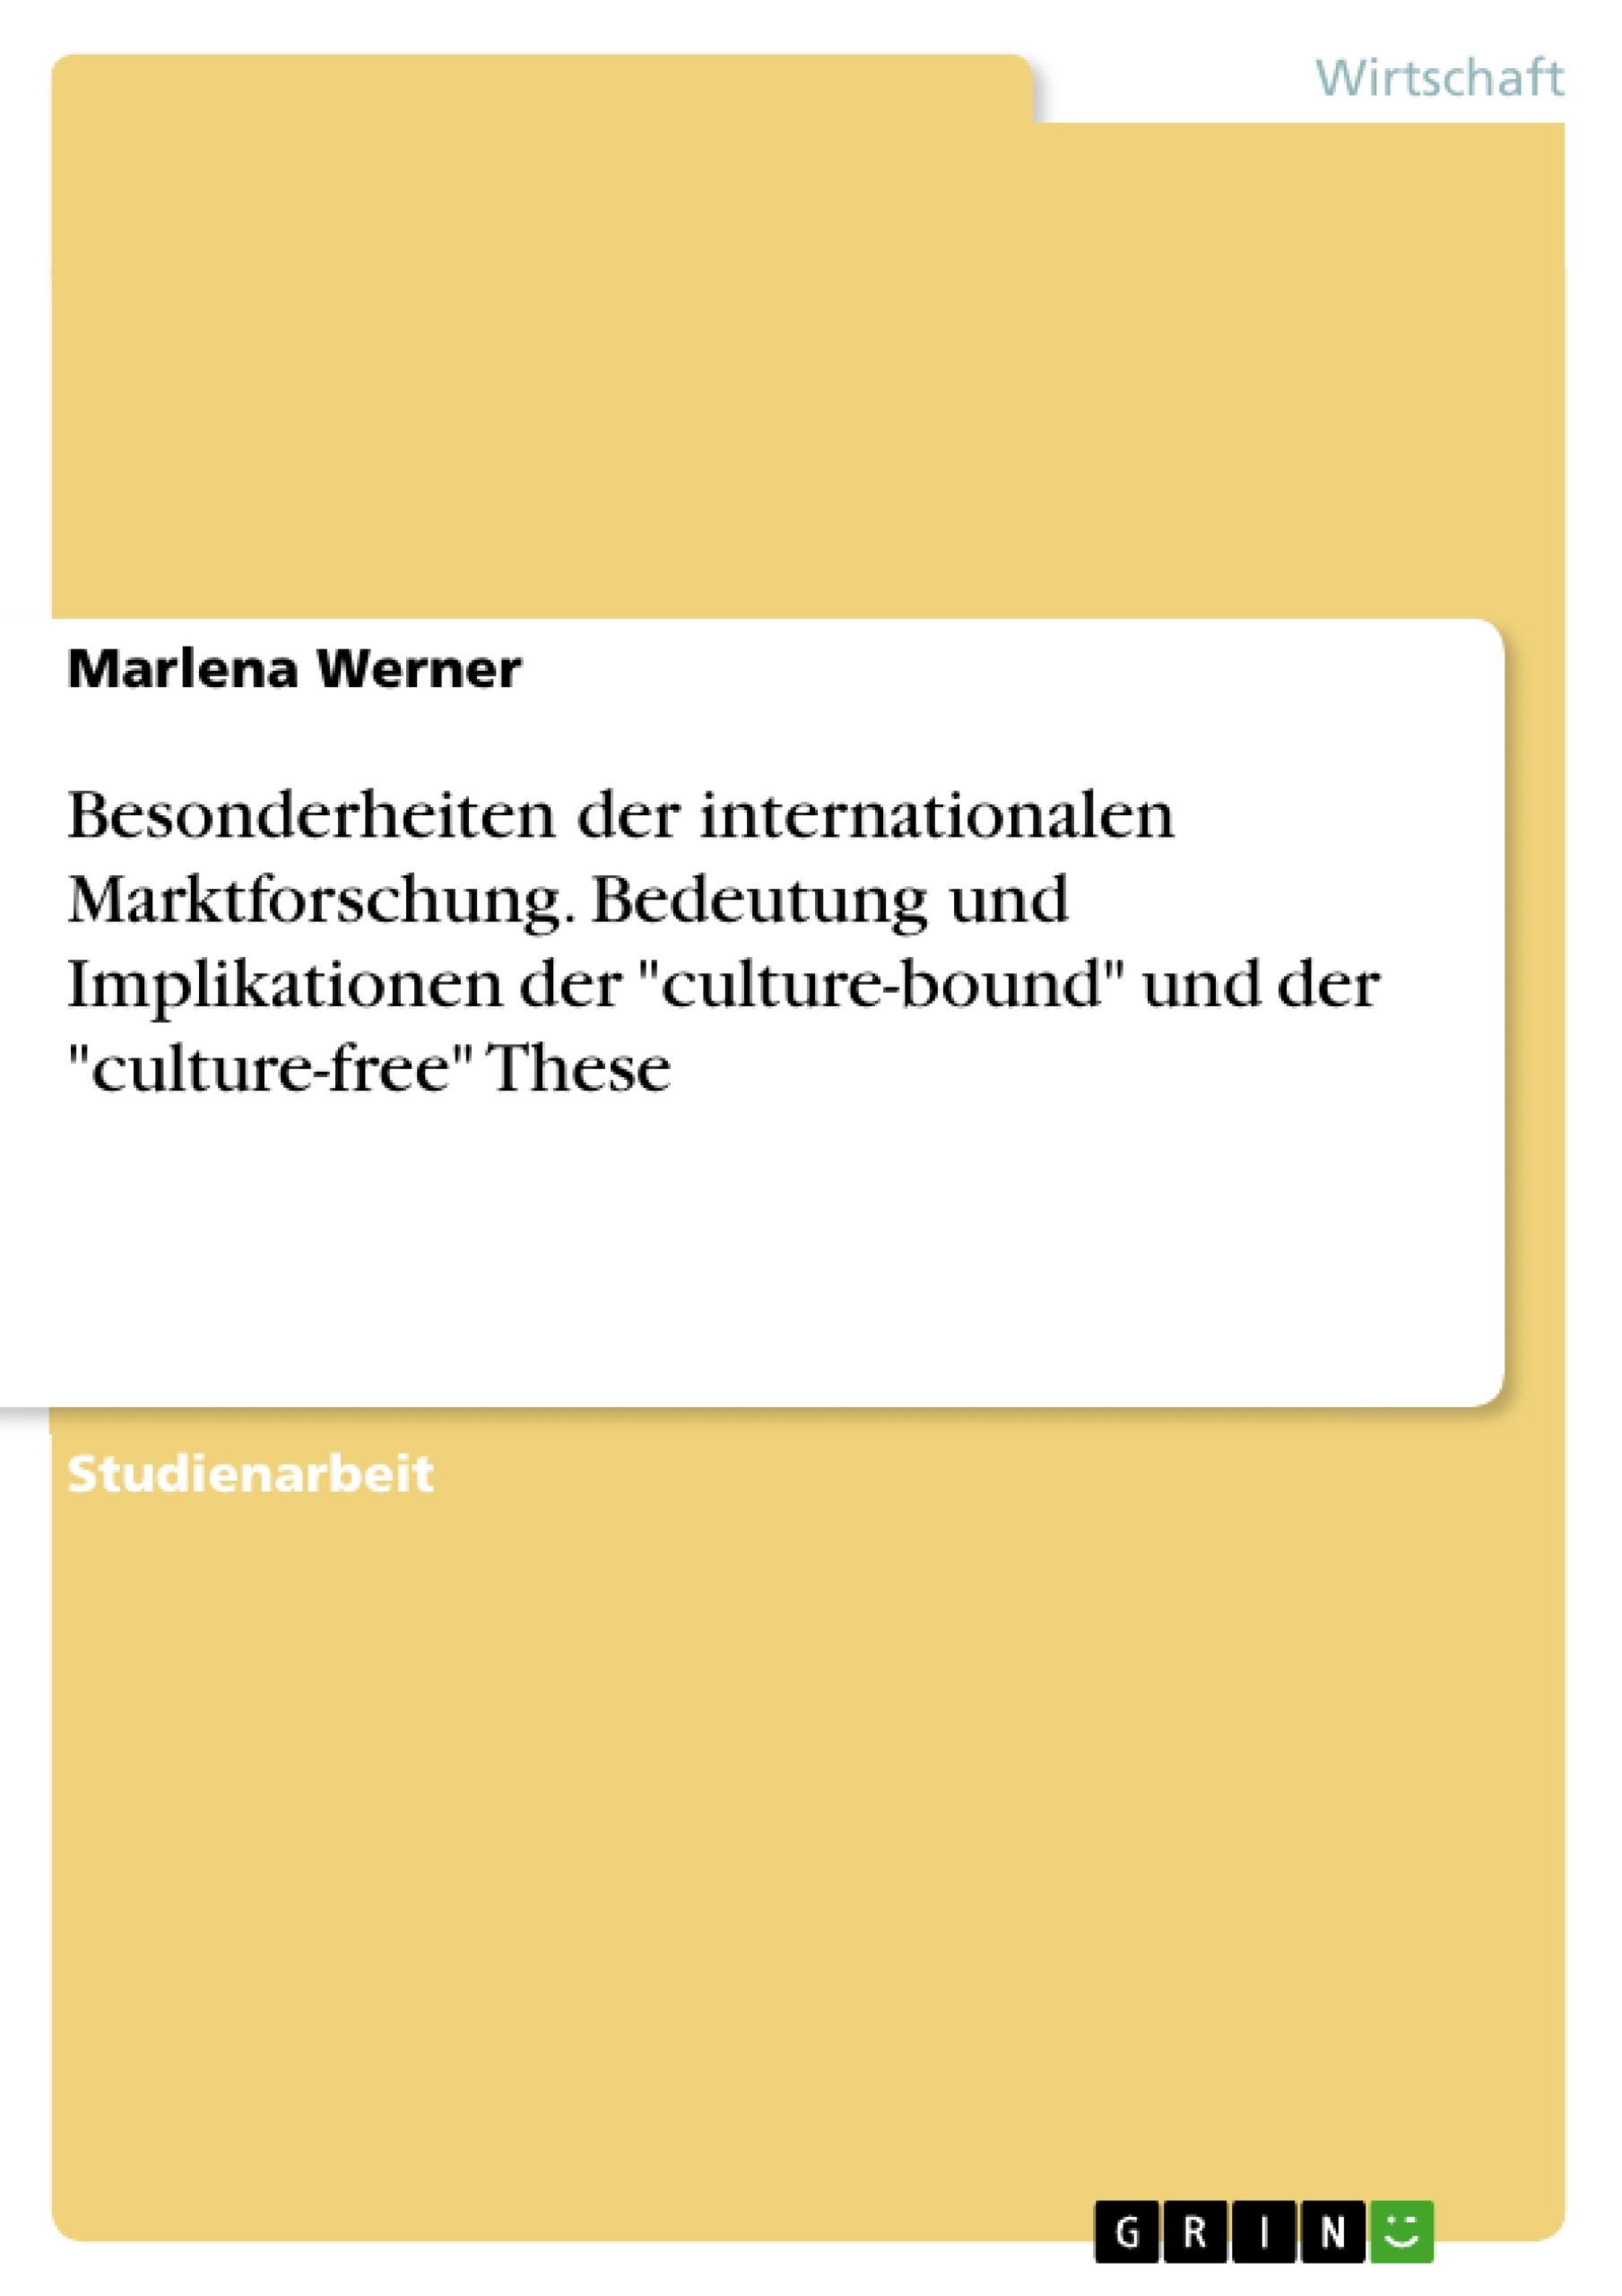 Titre: Besonderheiten der internationalen Marktforschung. Bedeutung und Implikationen der "culture-bound" und der "culture-free" These